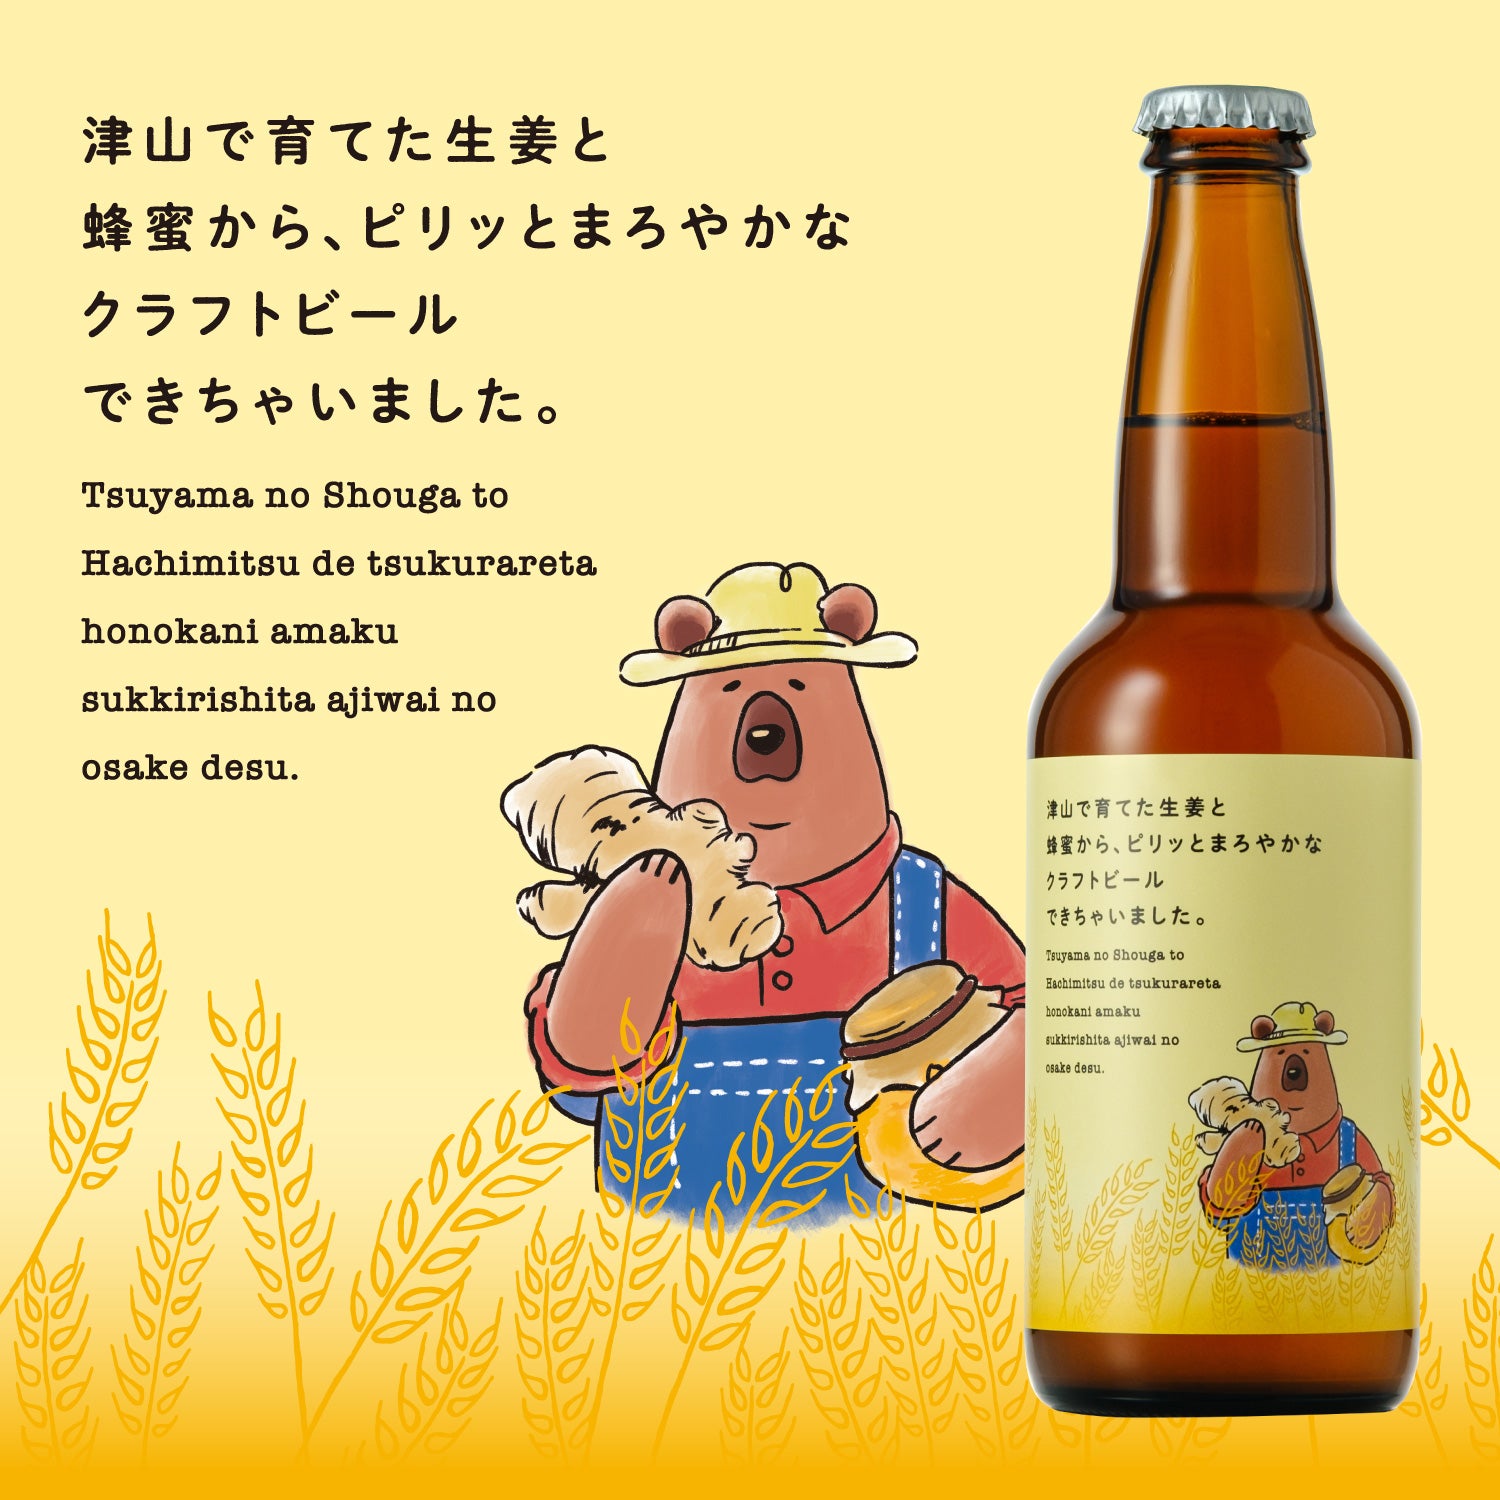 津山で育てた生姜と蜂蜜から、ピリッとまろやかなクラフトビールできちゃいました。